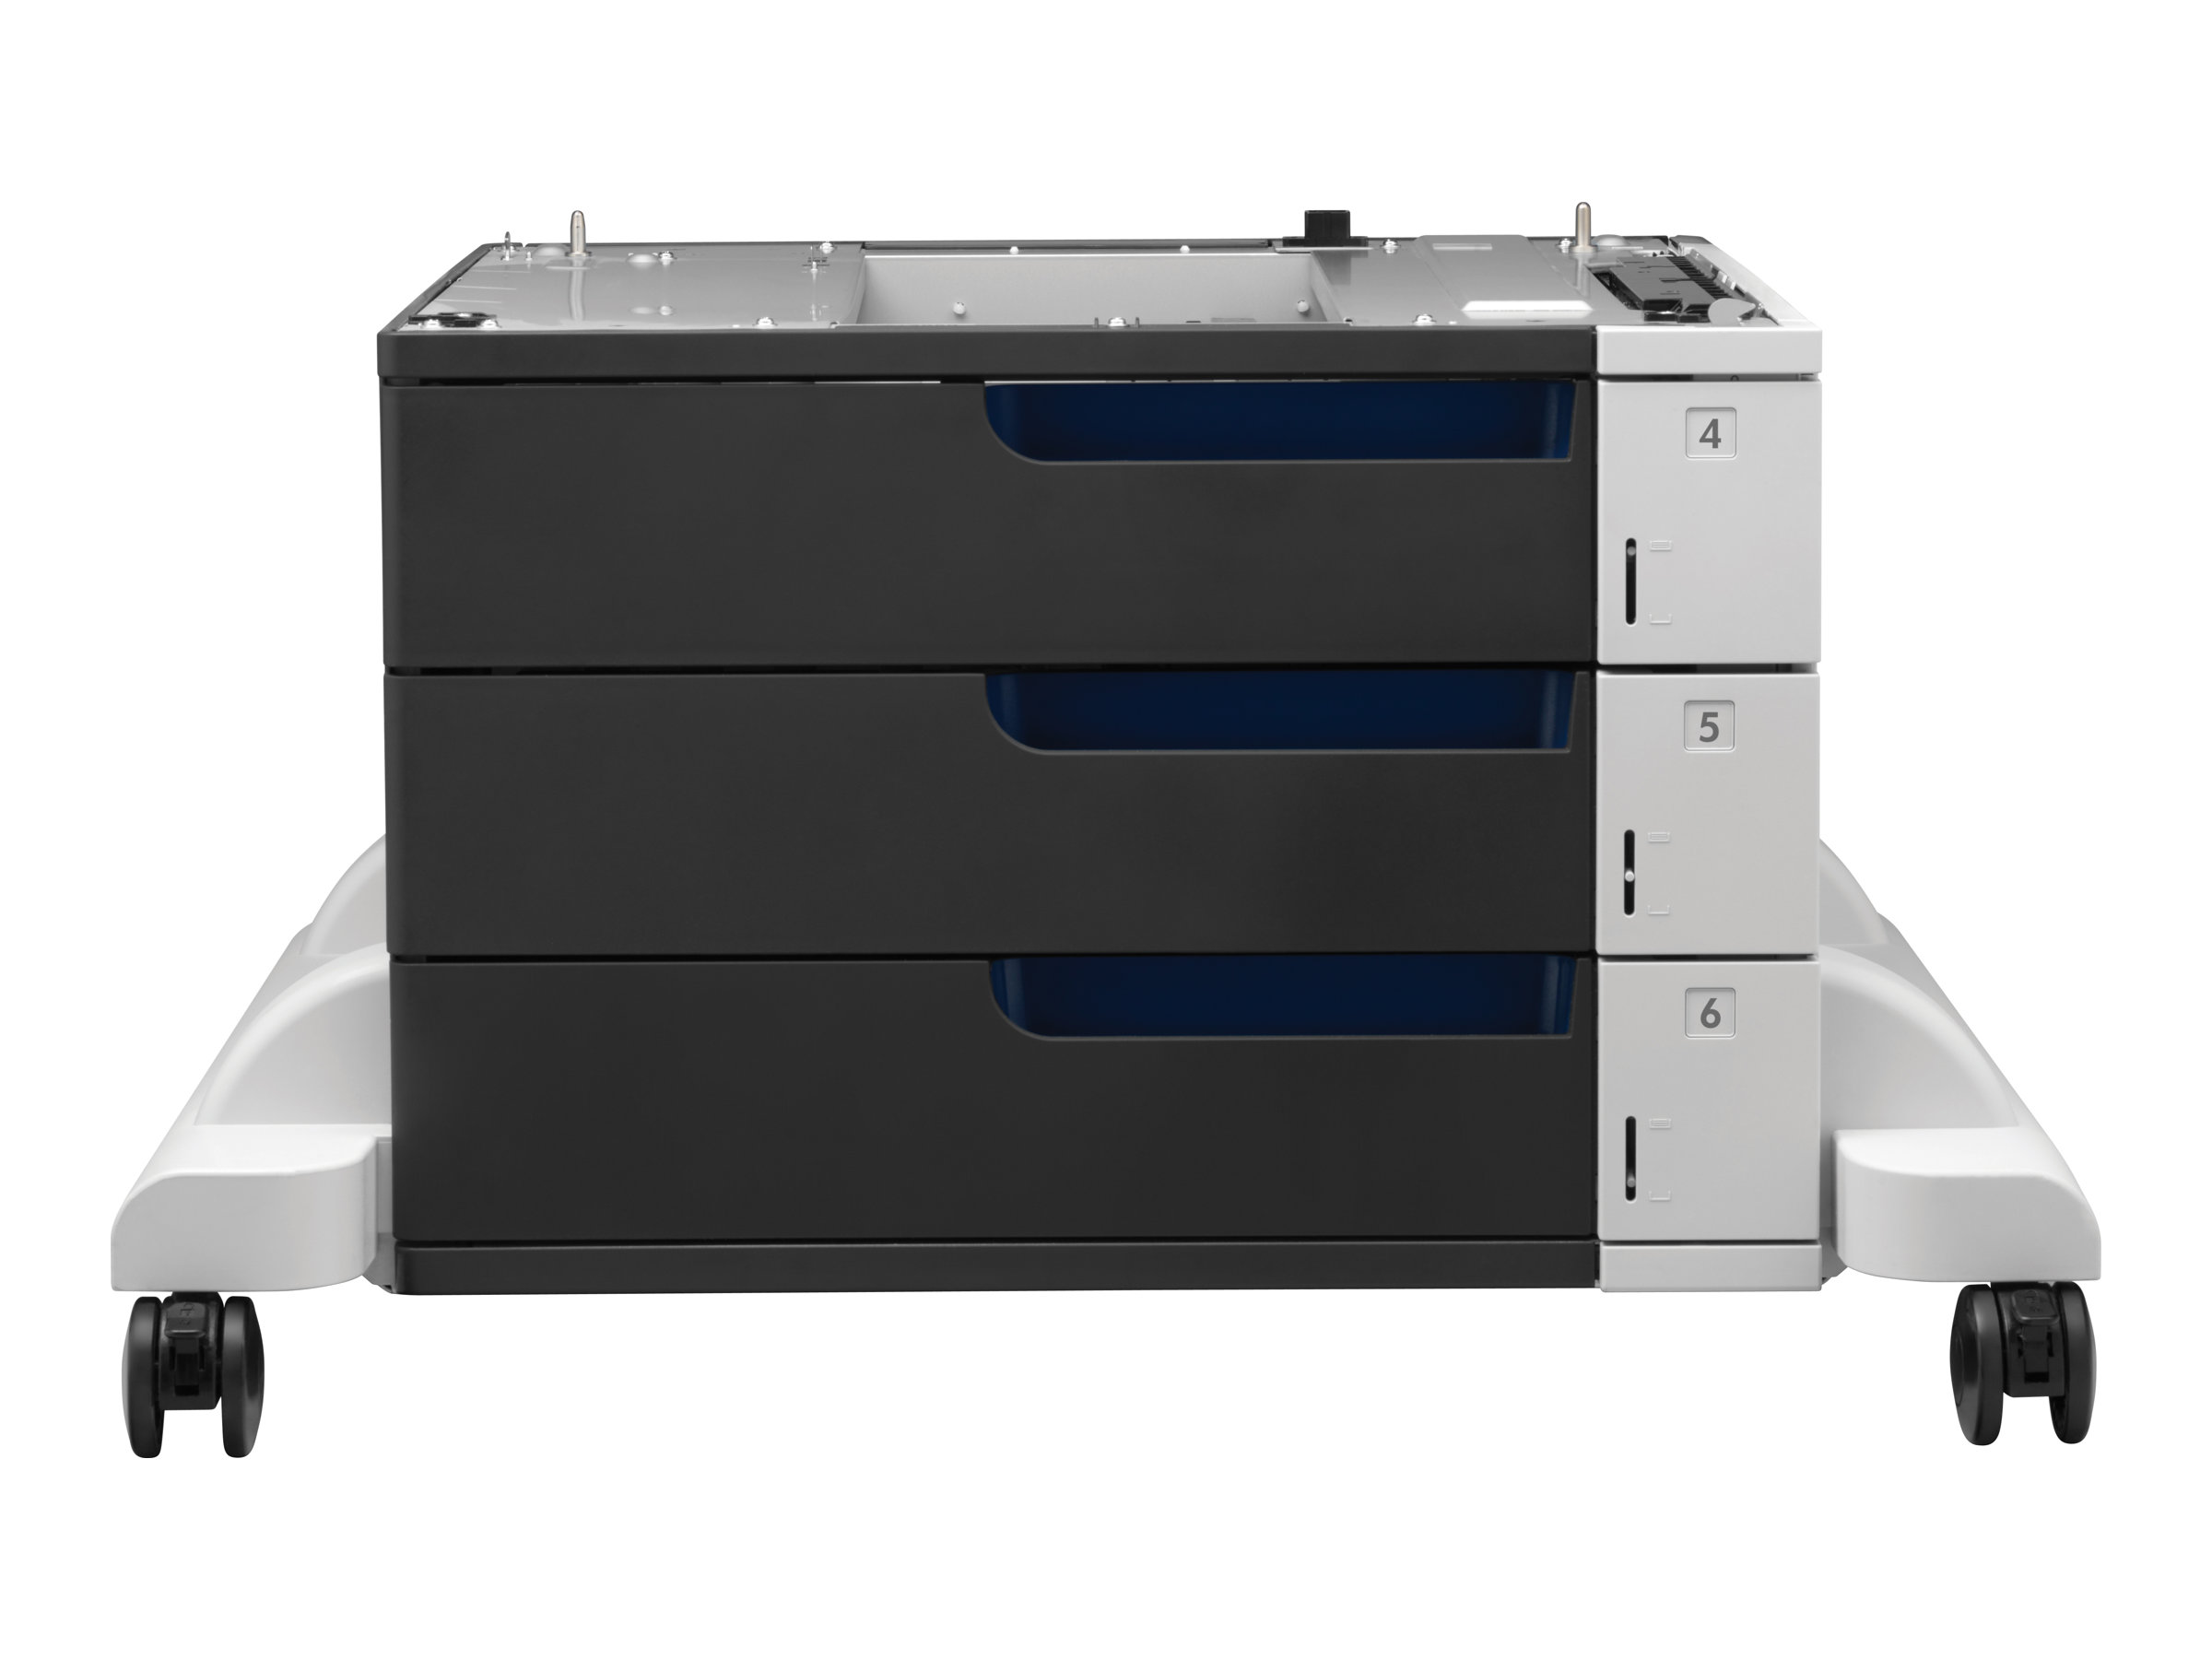 HP - Druckerbasis mit Medienzufhrung - 1500 Bltter in 3 Schubladen (Trays) - fr Color LaserJet Enterprise CP5525, M750, MFP M